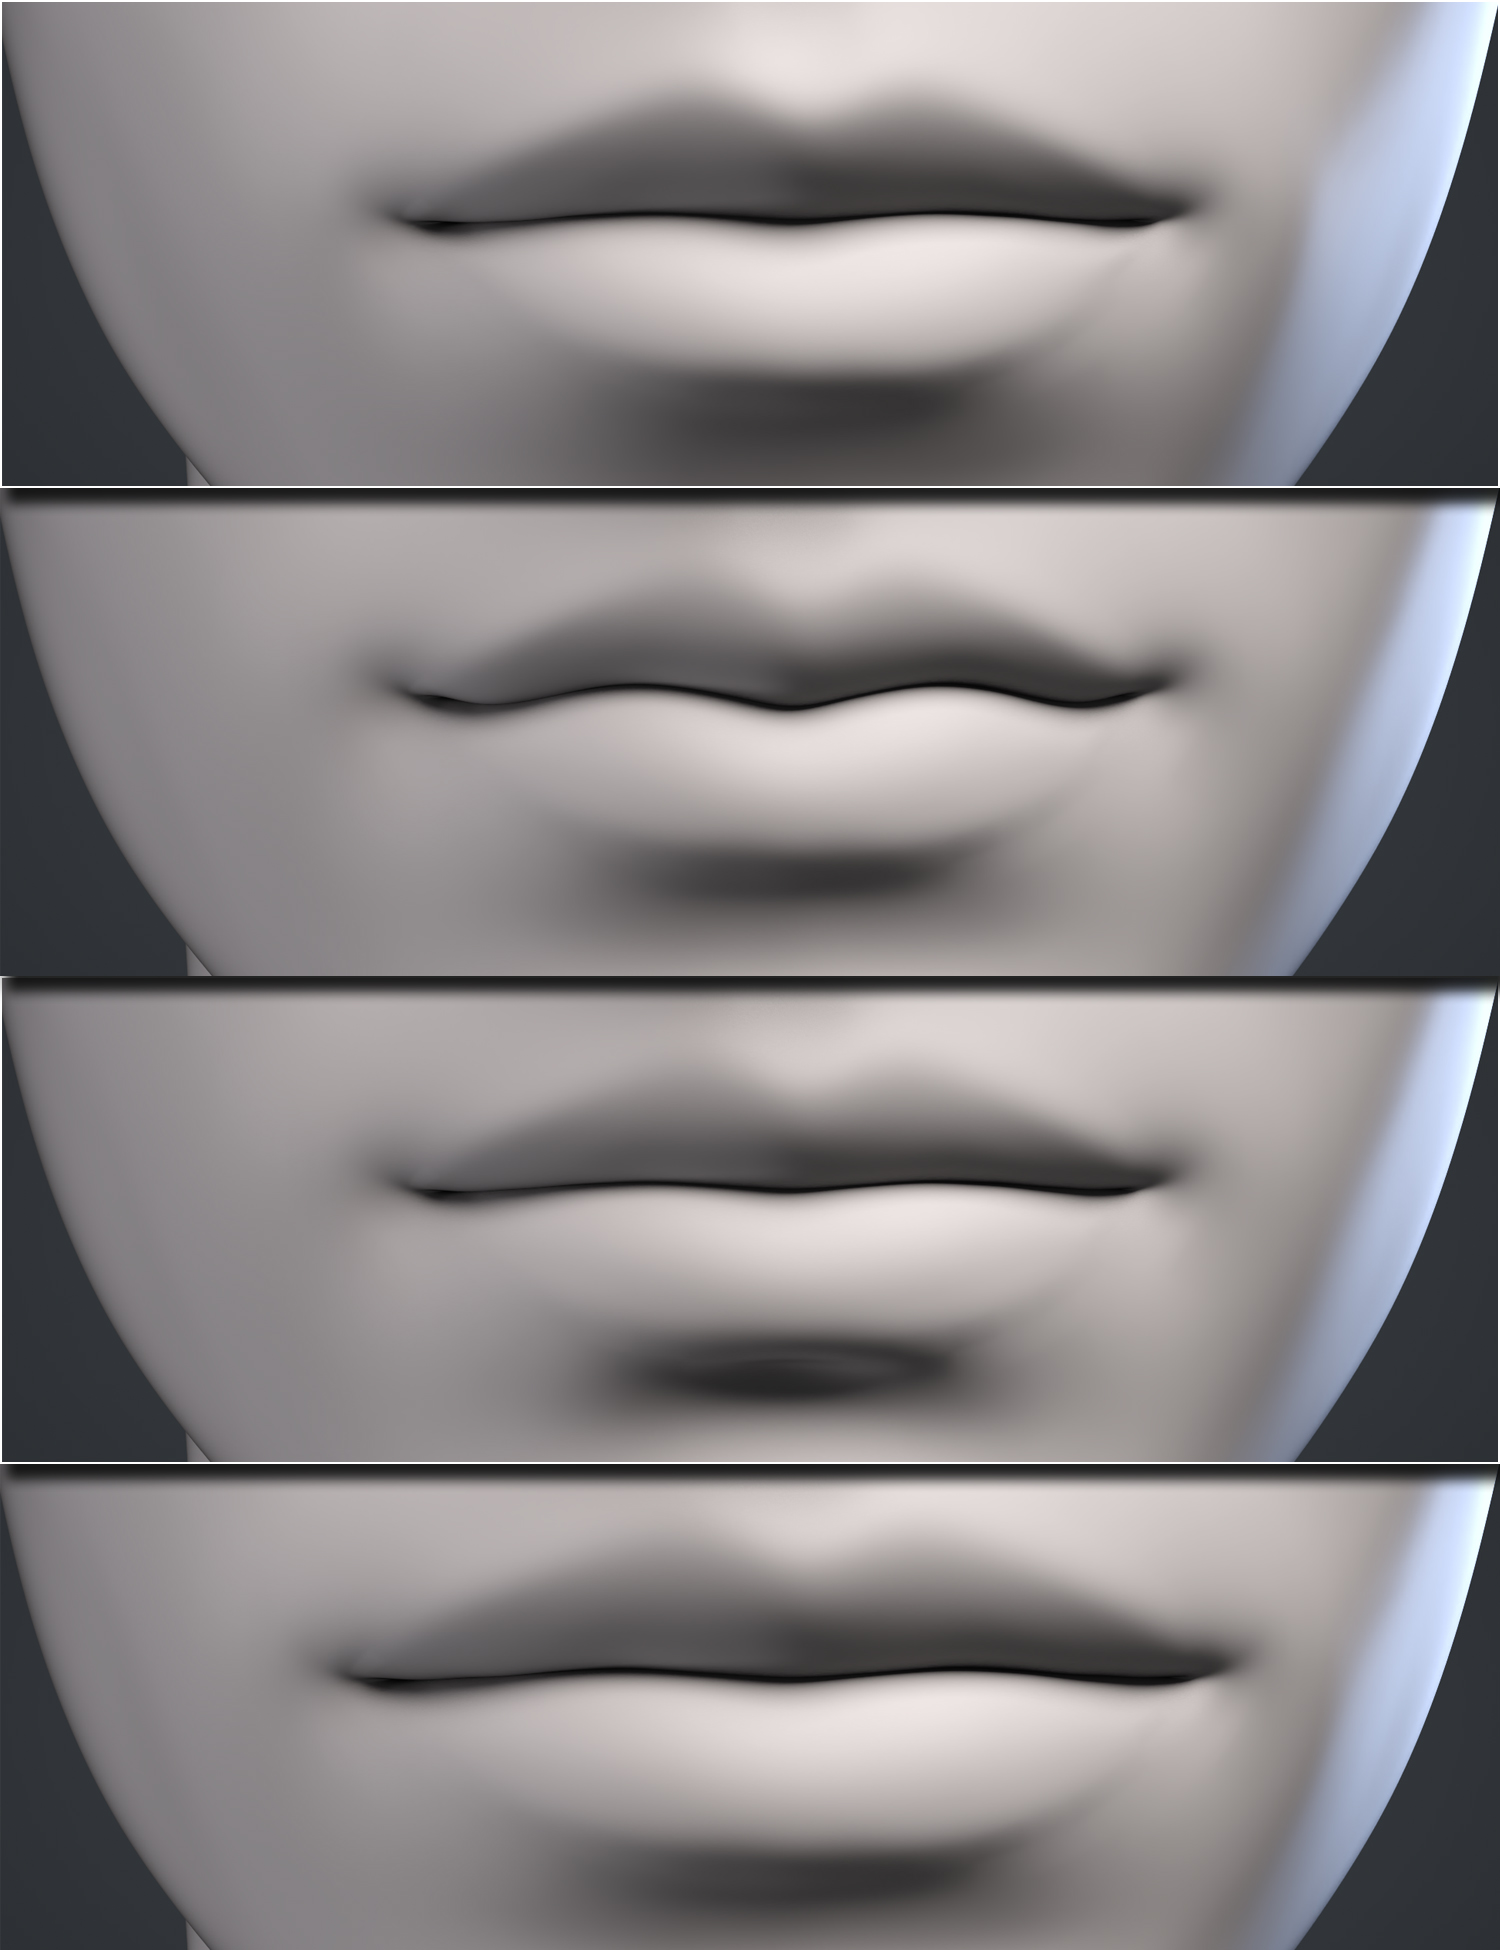 Genesis 9 Head Shapes by: , 3D Models by Daz 3D